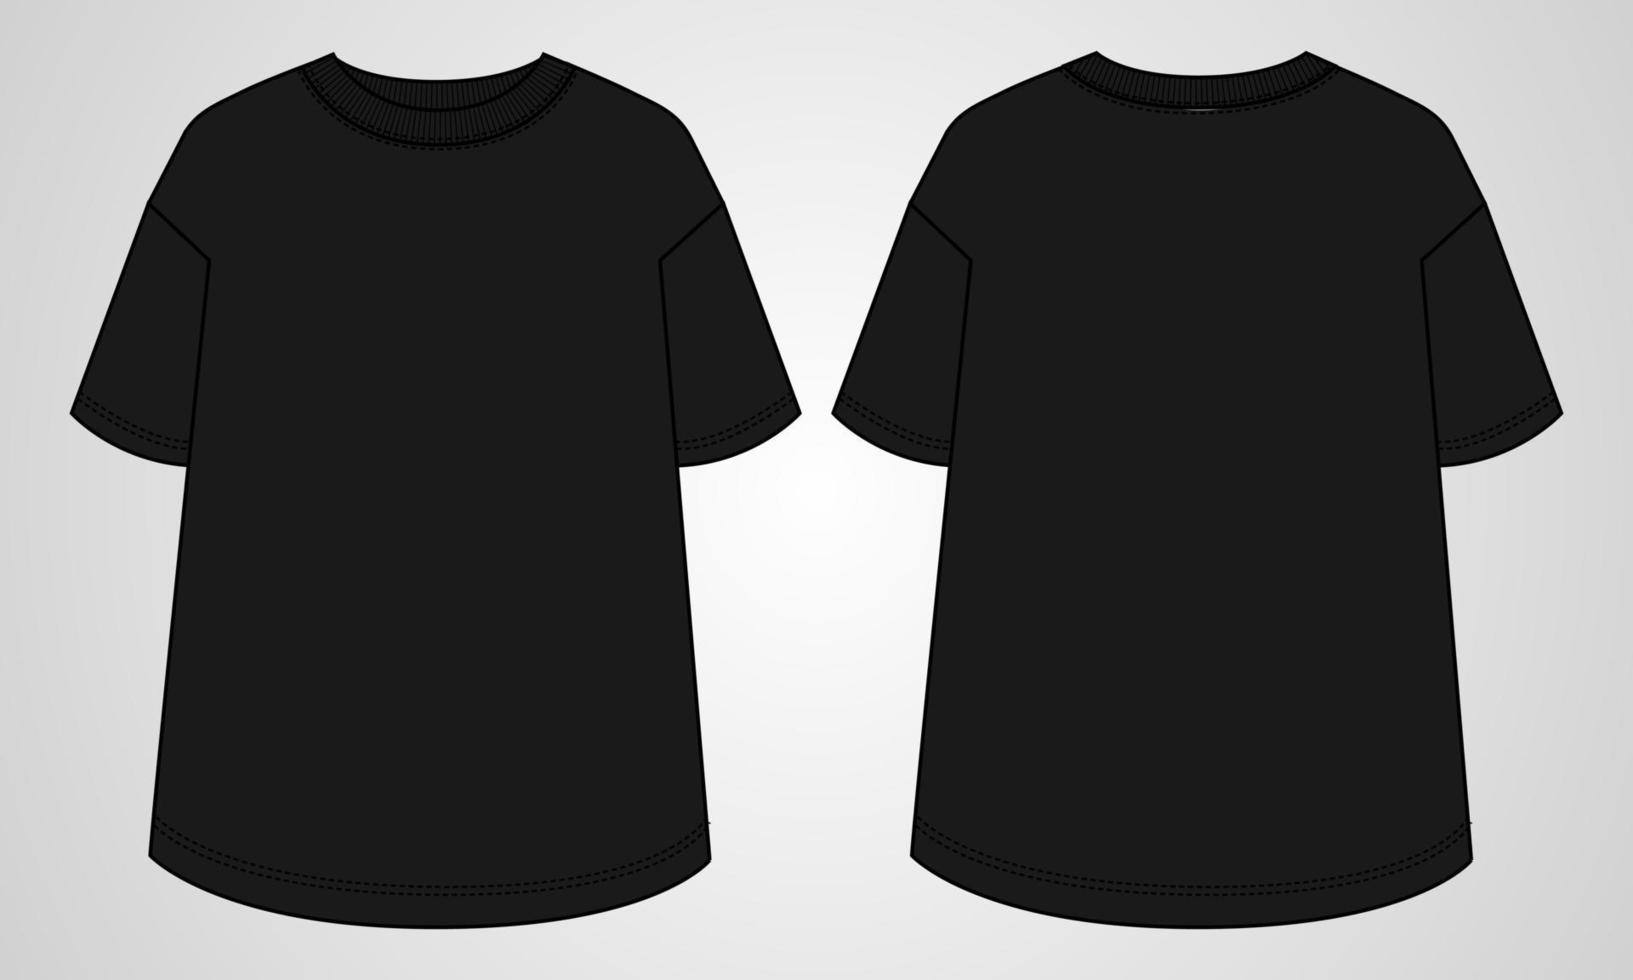 camiseta de manga curta tops modelo de ilustração vetorial de flats de moda técnica para senhoras vetor